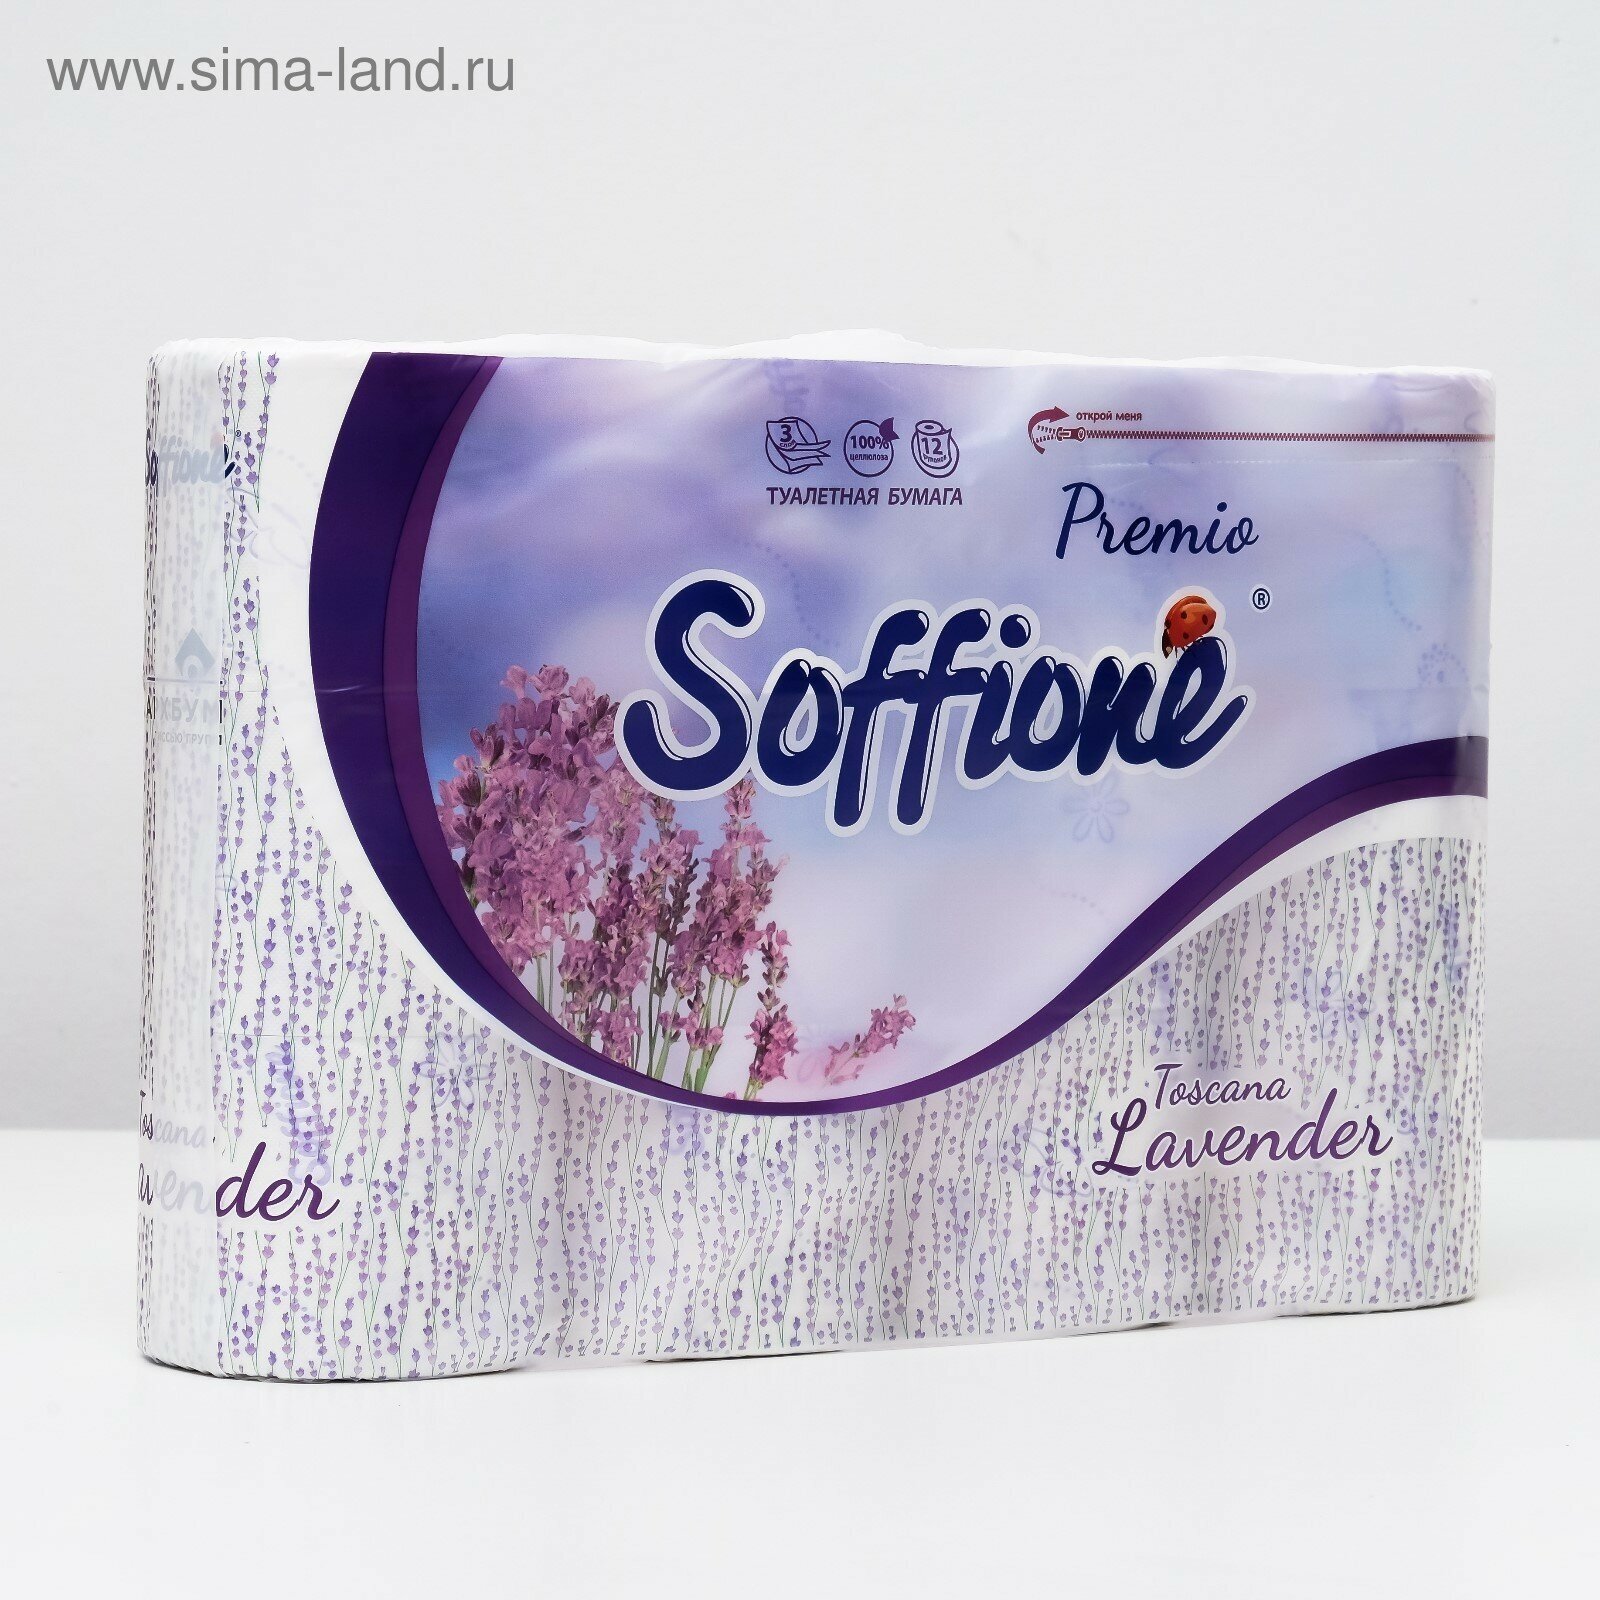 Туалетная бумага Soffione Premio Lavender 4 рулона 3 слоя - фото №10